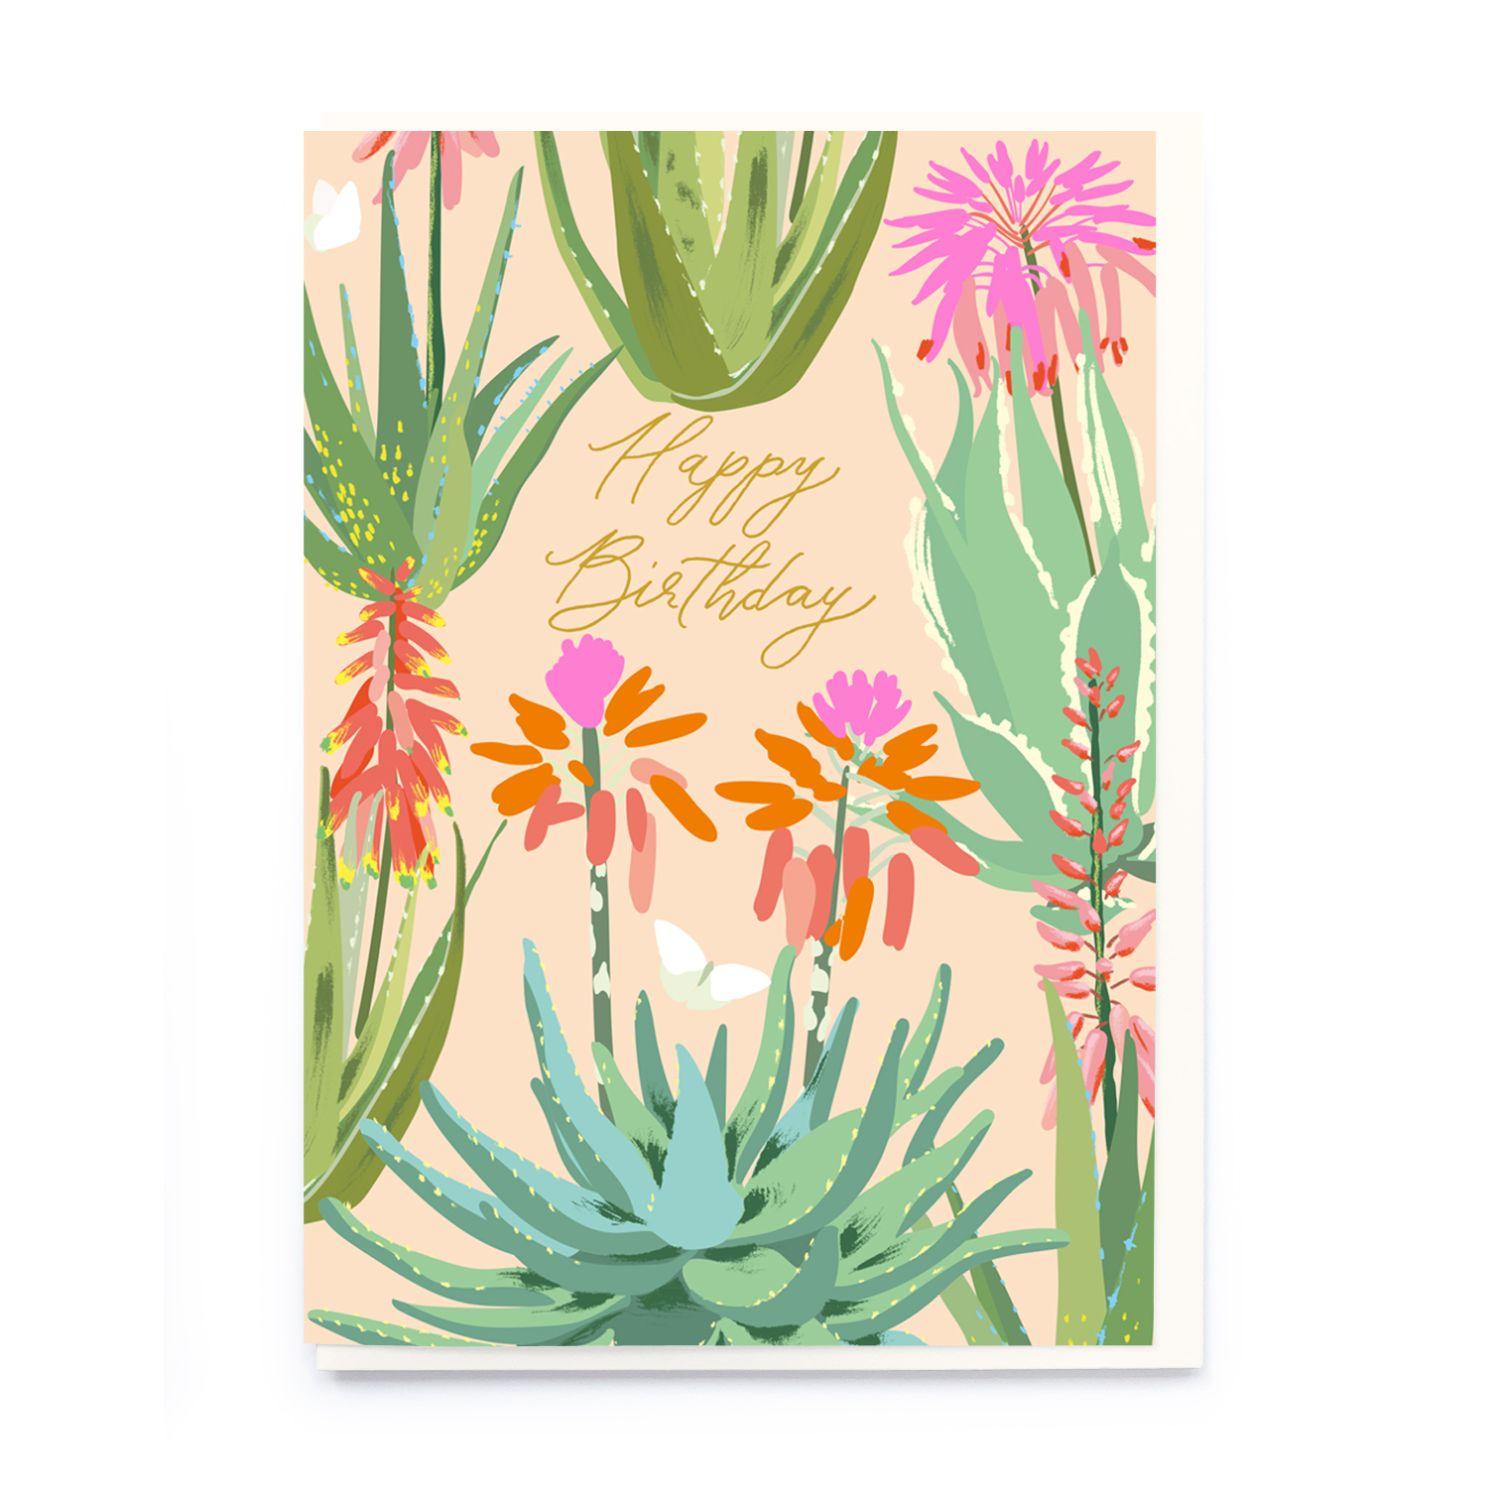 Aloe vera birthday Card by Noi Publishing